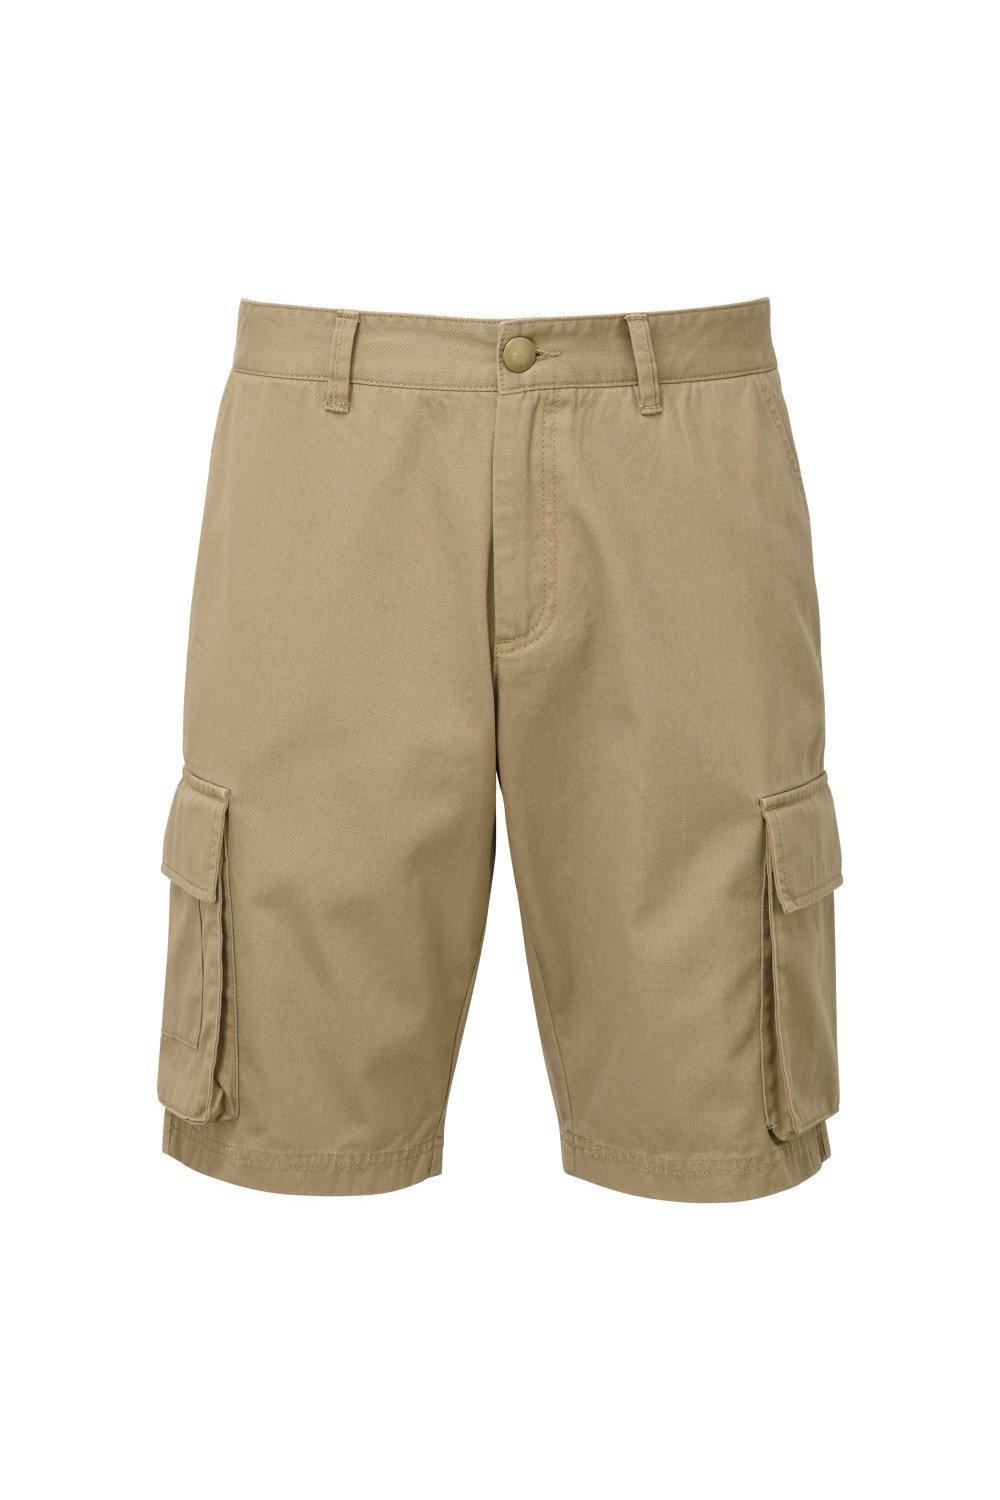 Грузовые шорты Asquith & Fox, хаки шорты карго мужские однотонные свободные штаны с множеством карманов на пуговицах с широкими штанинами декор летние